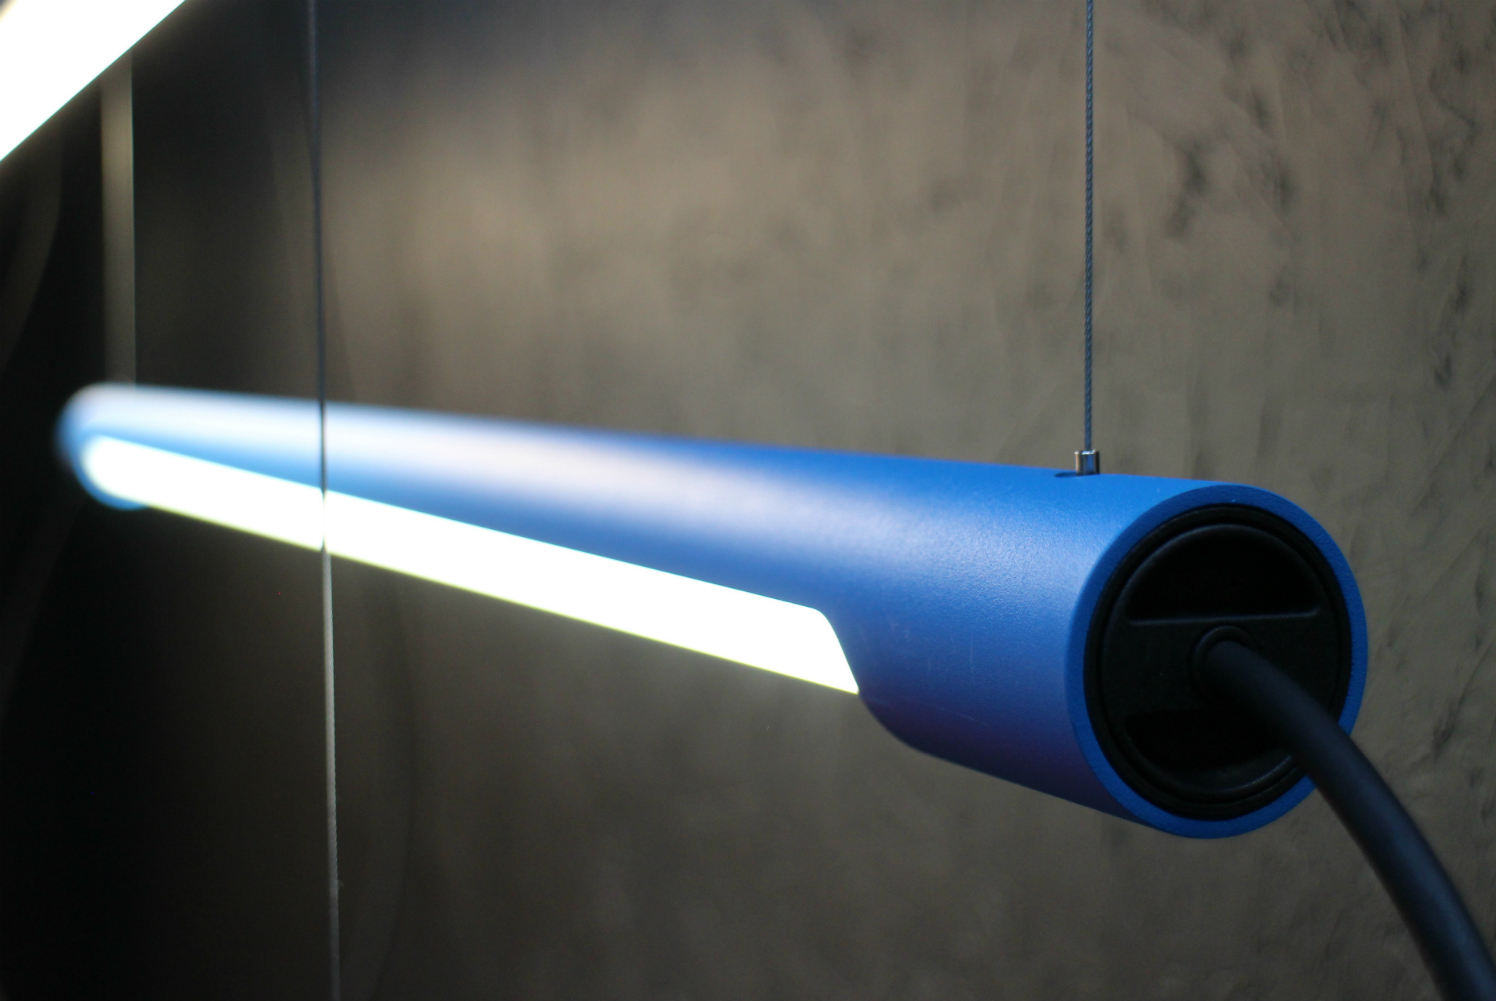 kien licht 1 smart lights news blue aluminum